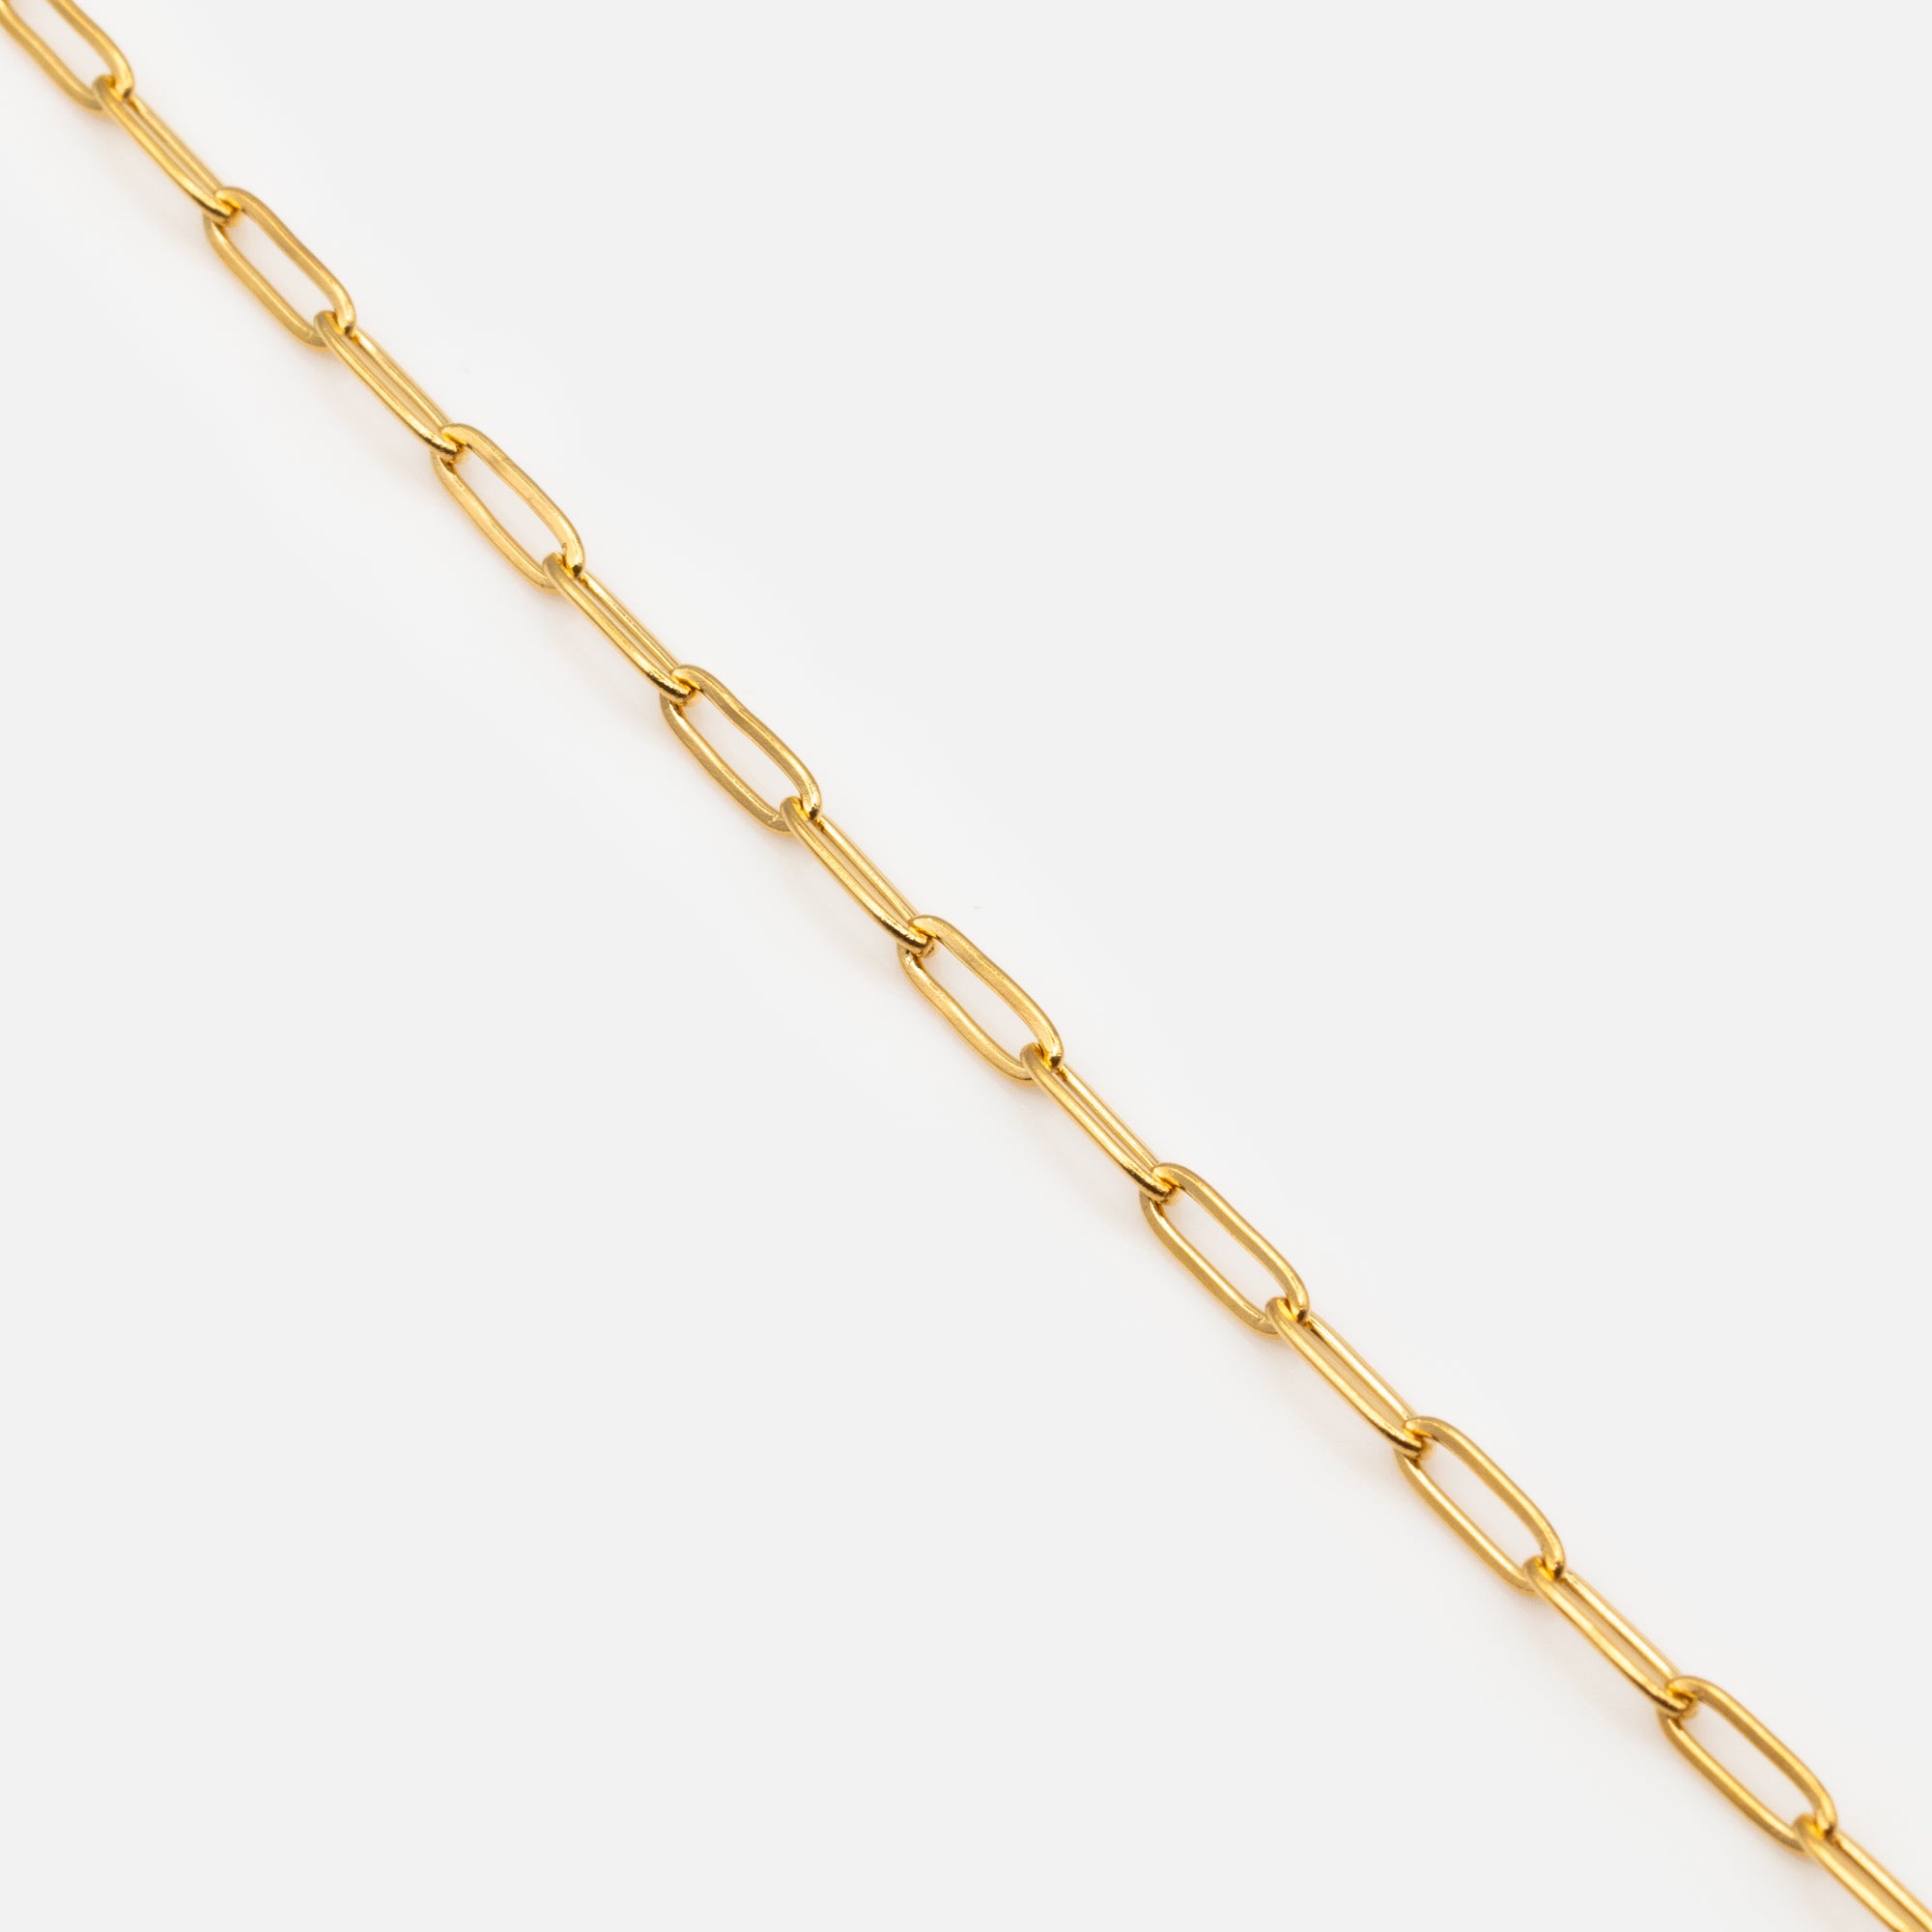 Gold paper clip link bracelet